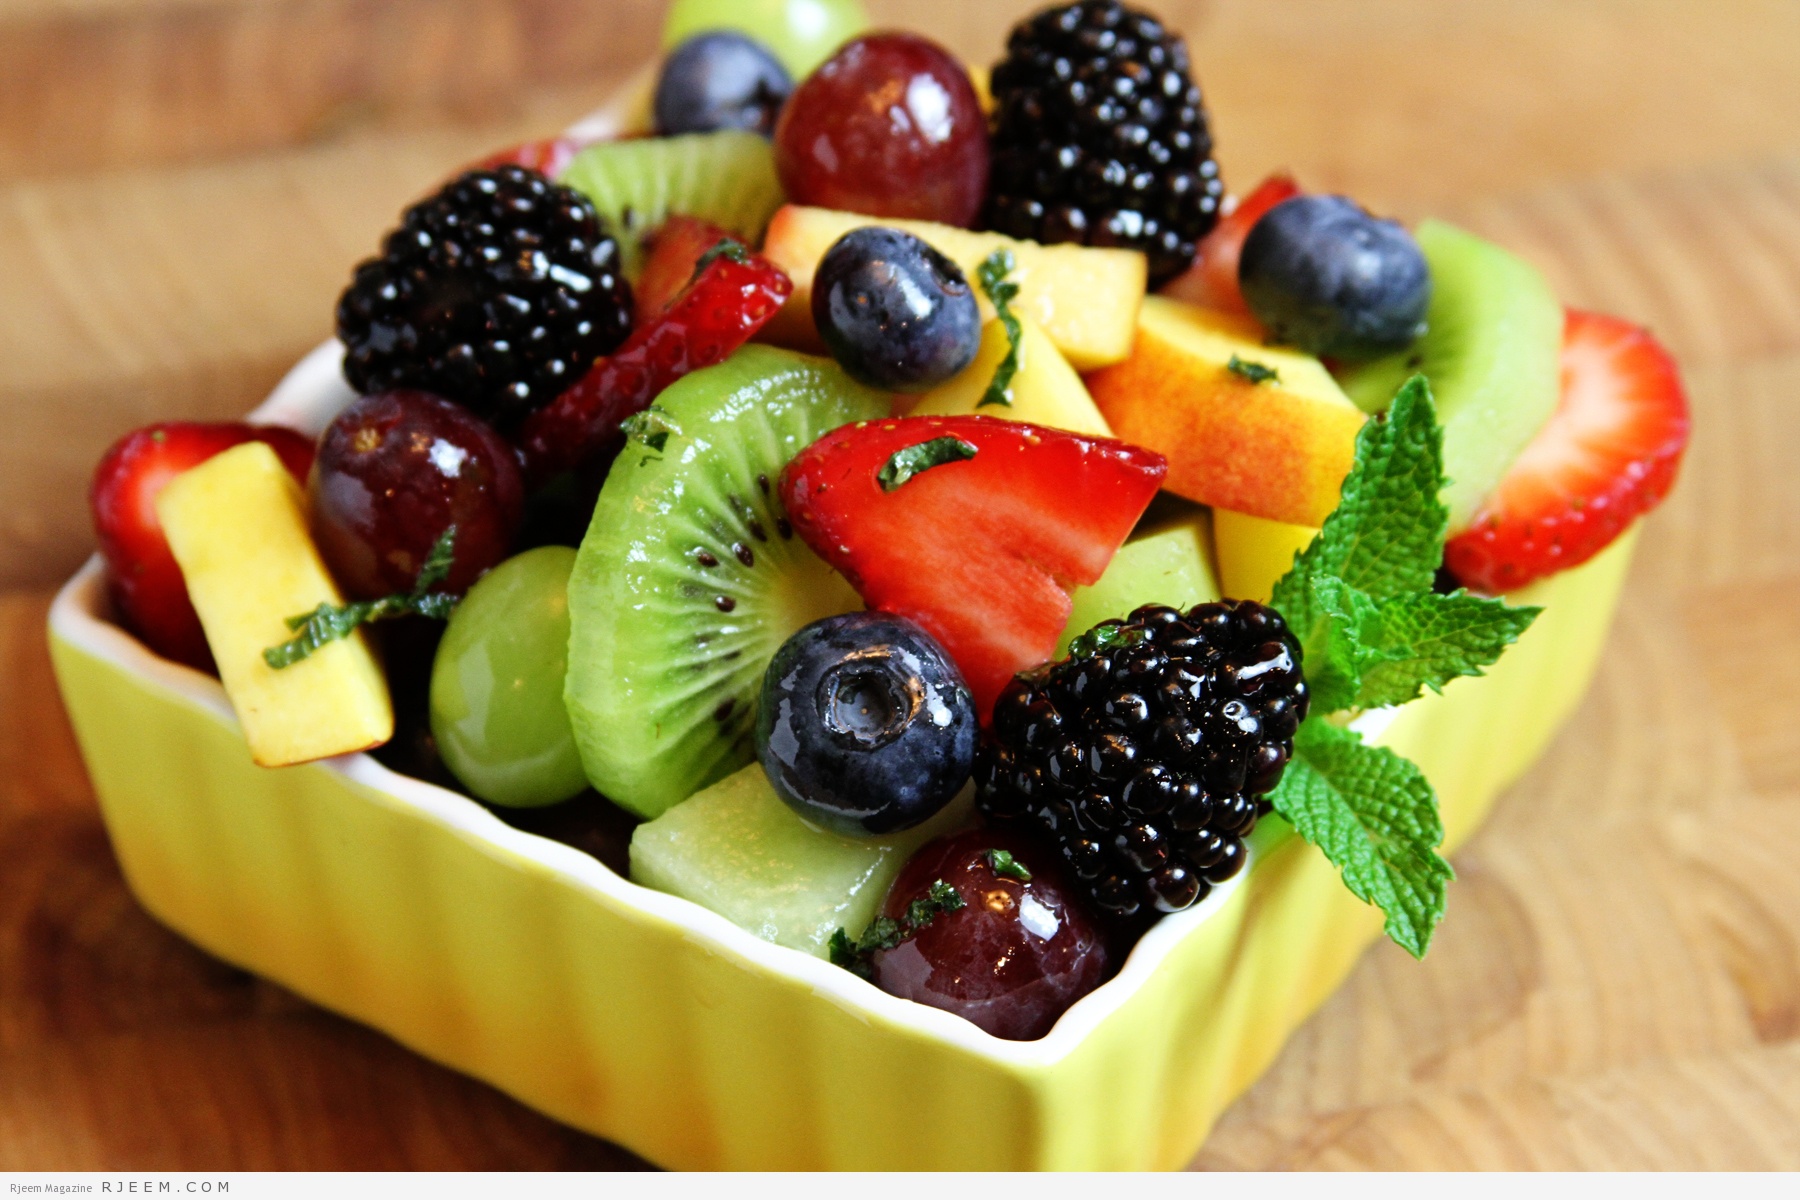 الفواكه للتخسيس كيفية استخدام الفواكه لخسارة الوزن الزائد مجلة رجيم